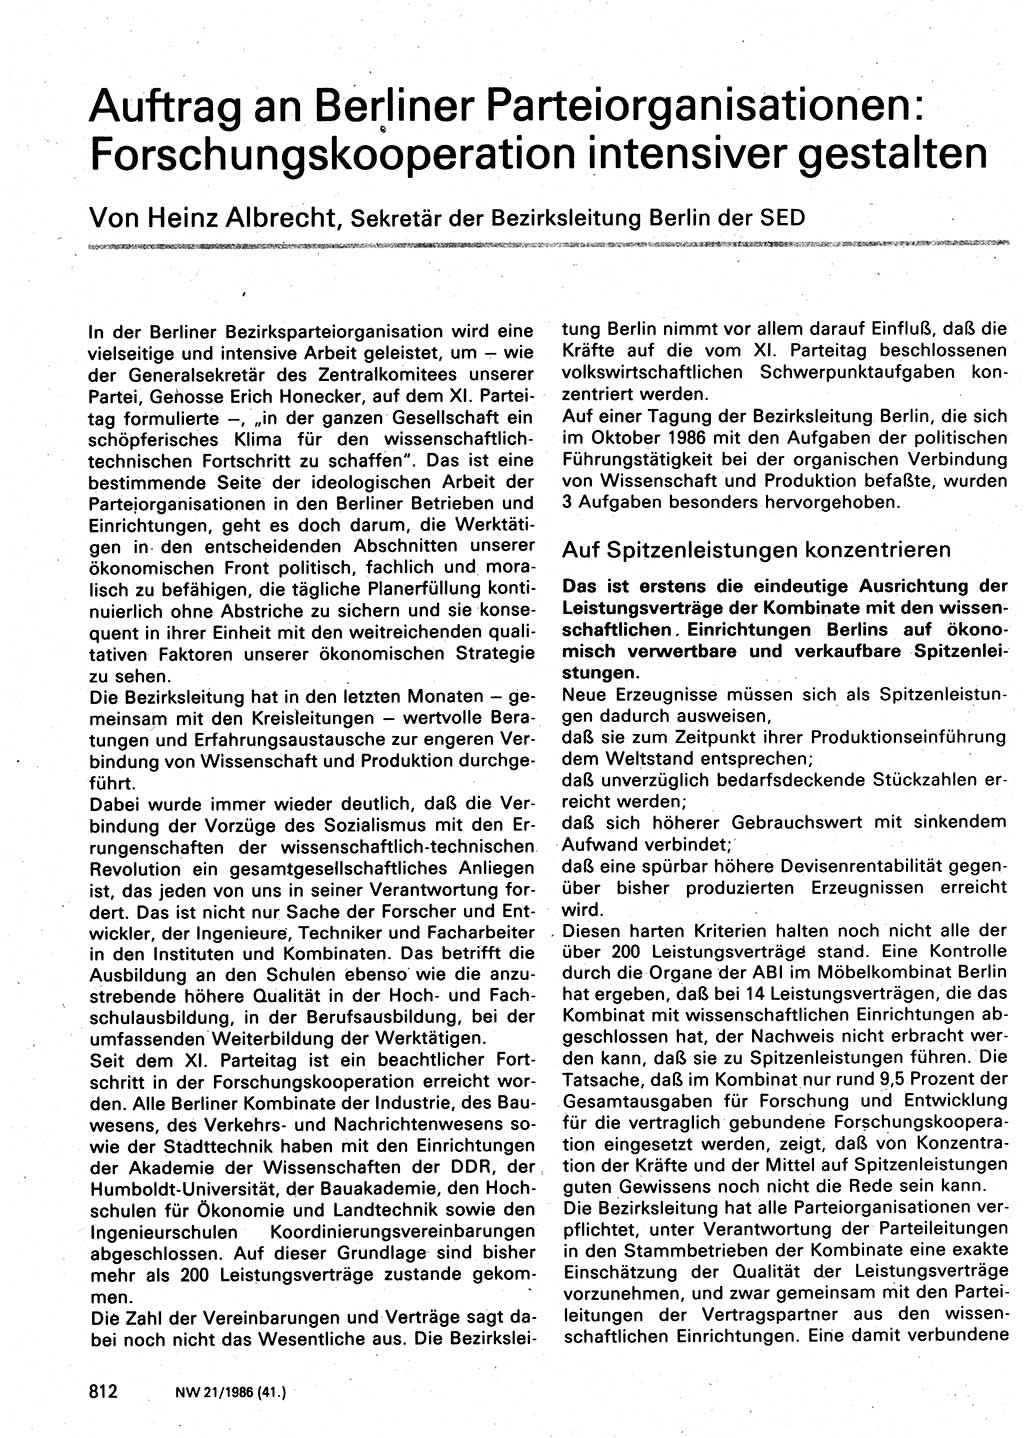 Neuer Weg (NW), Organ des Zentralkomitees (ZK) der SED (Sozialistische Einheitspartei Deutschlands) für Fragen des Parteilebens, 41. Jahrgang [Deutsche Demokratische Republik (DDR)] 1986, Seite 812 (NW ZK SED DDR 1986, S. 812)